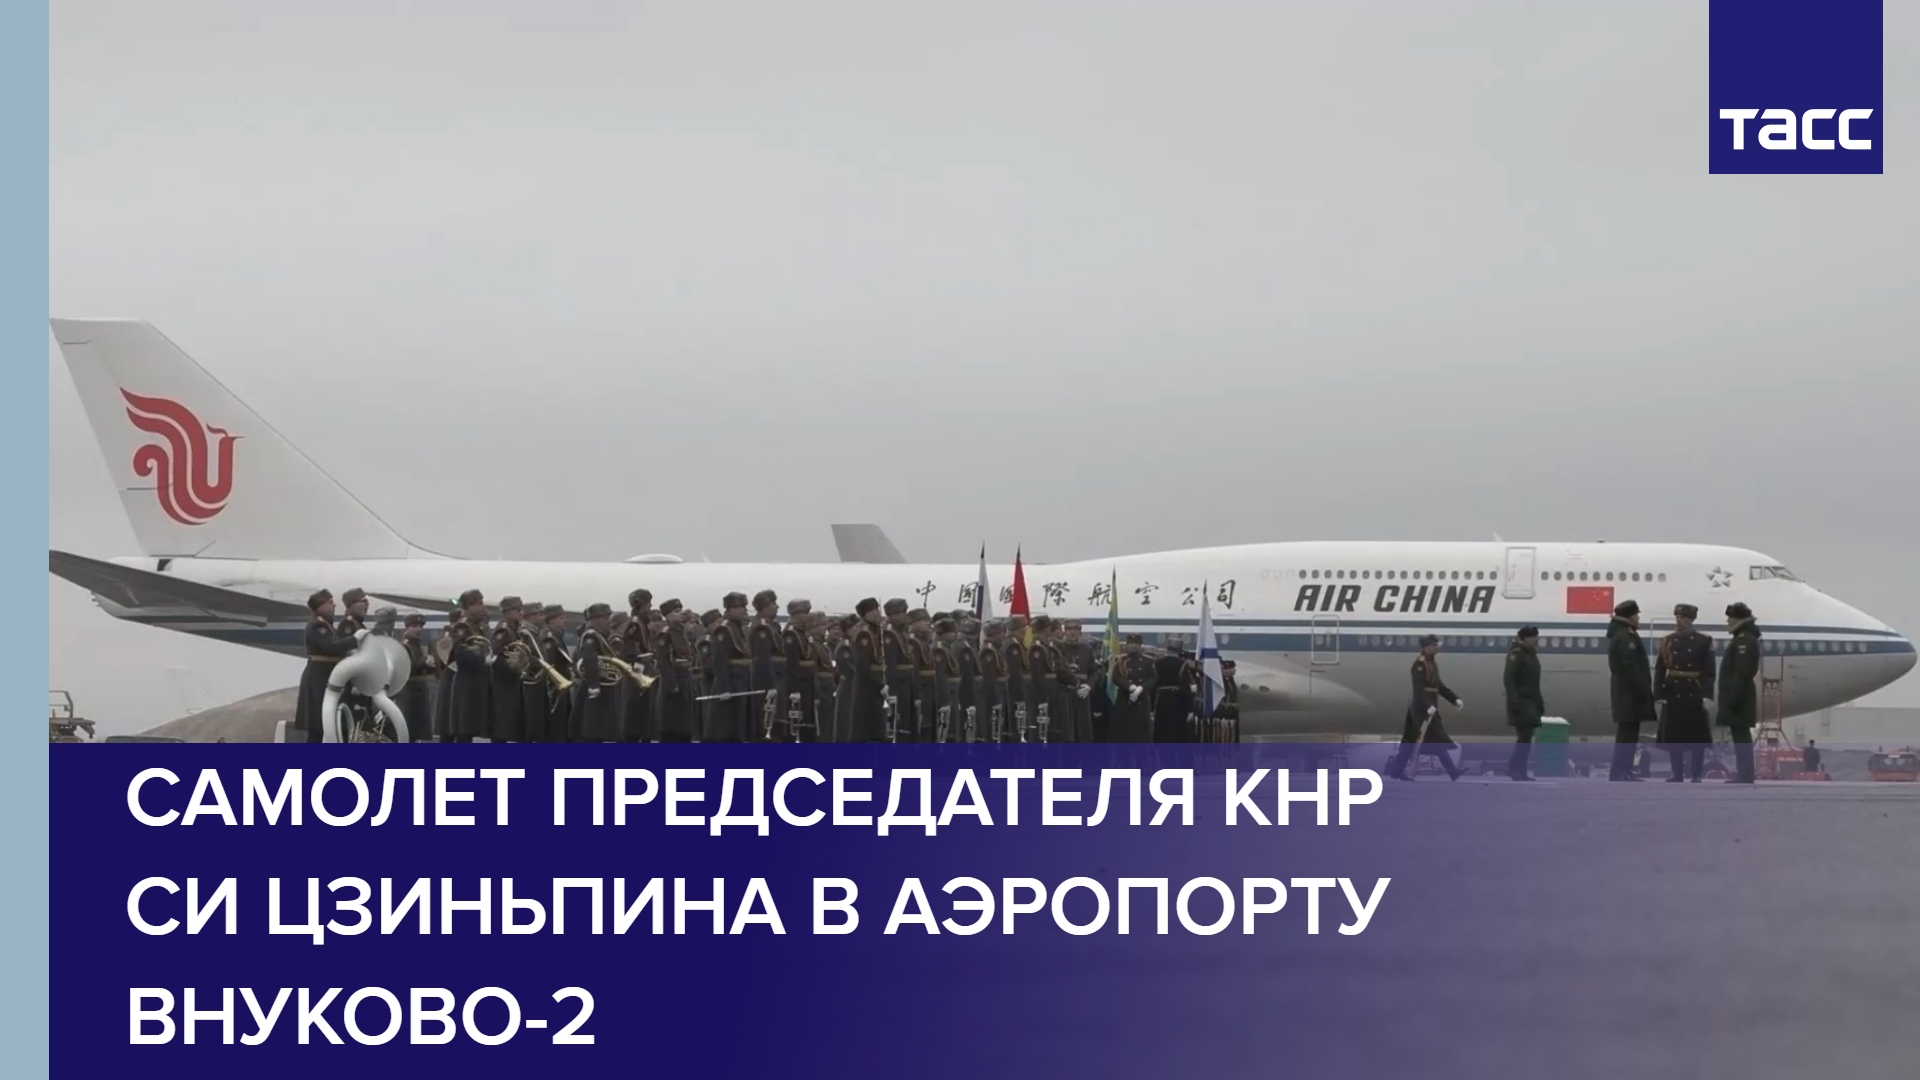 Самолет председателя КНР Си Цзиньпина в аэропорту Внуково-2